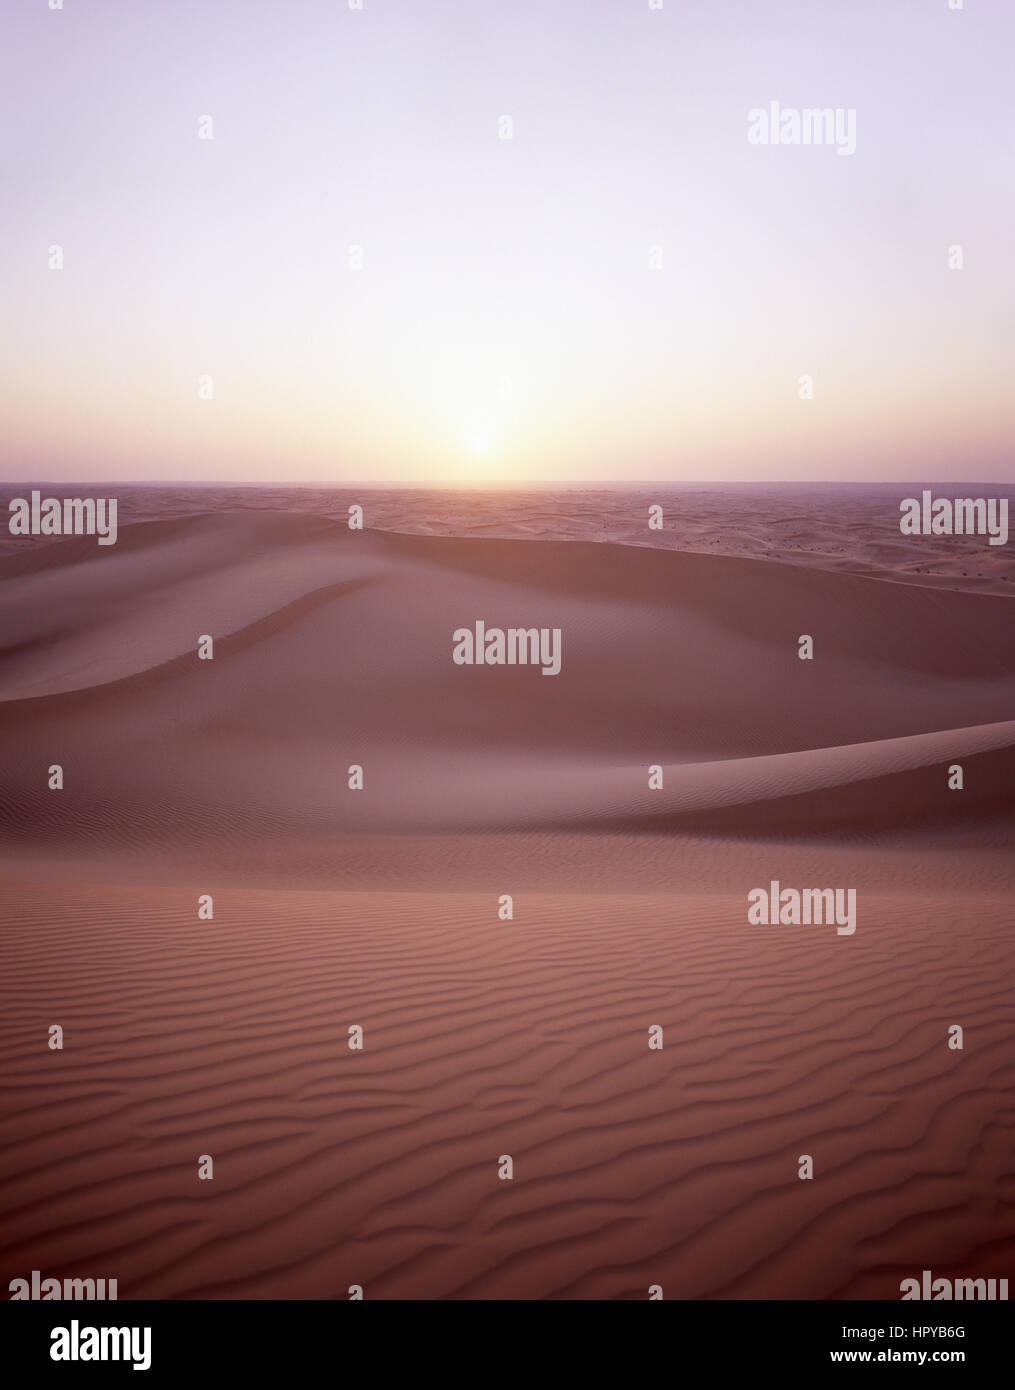 Dubai-Wüste bei Sonnenuntergang, Dubai, Vereinigte Arabische Emirate Stockfoto